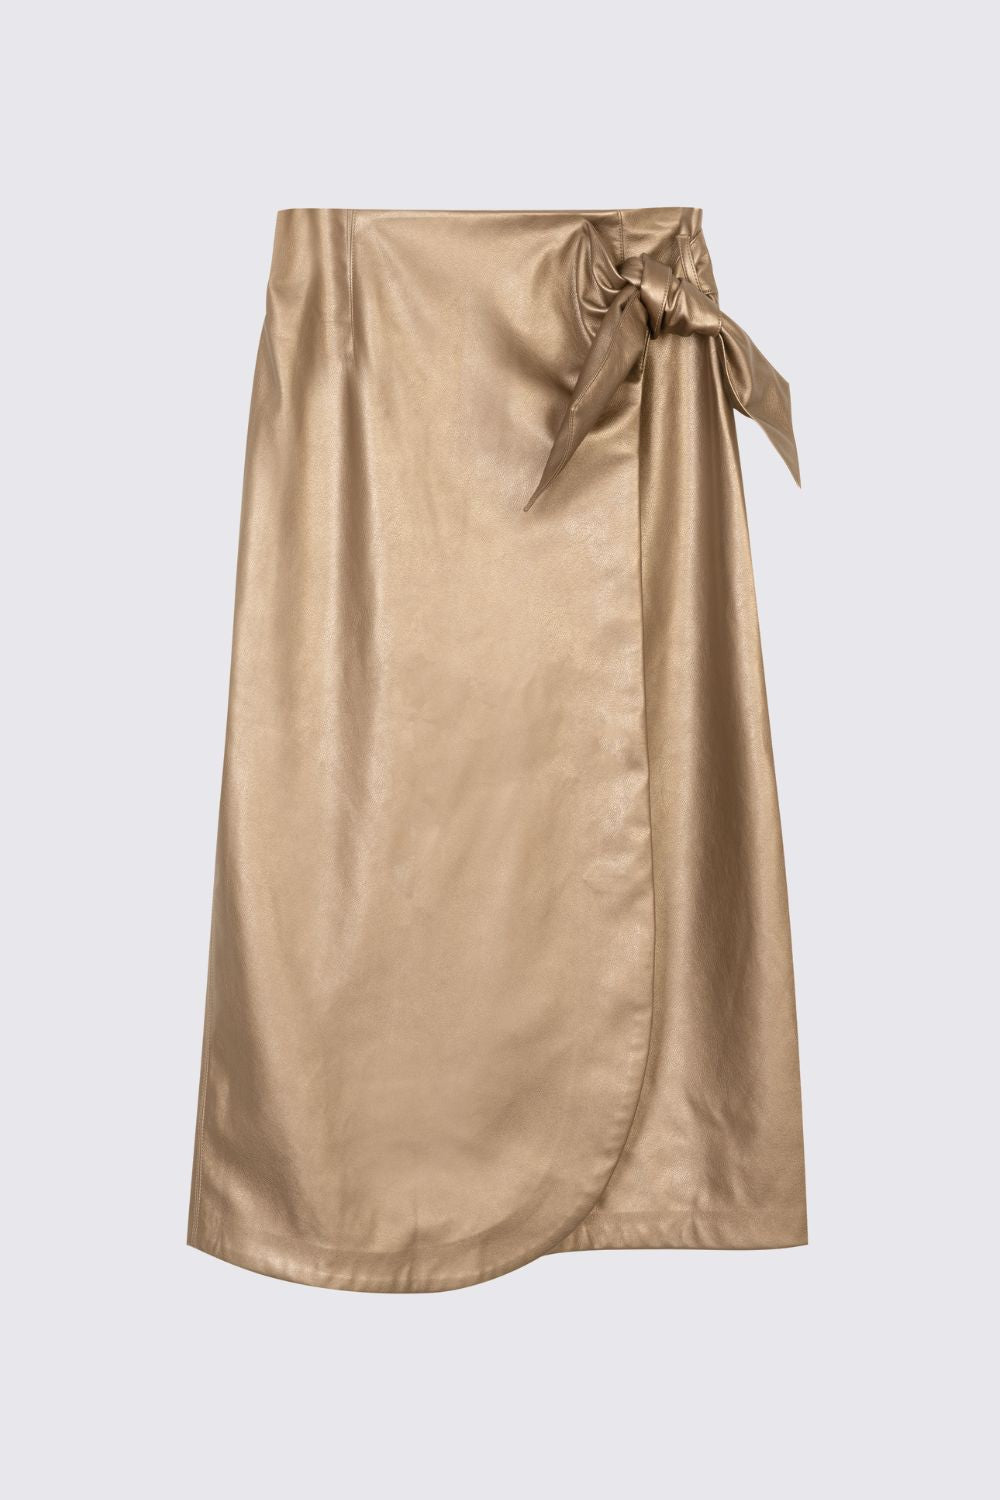 gold wrap skirt maxi skirt tie skirt Eleven Loves elevenloves 11 loves ellenloves faux leather sustainable 